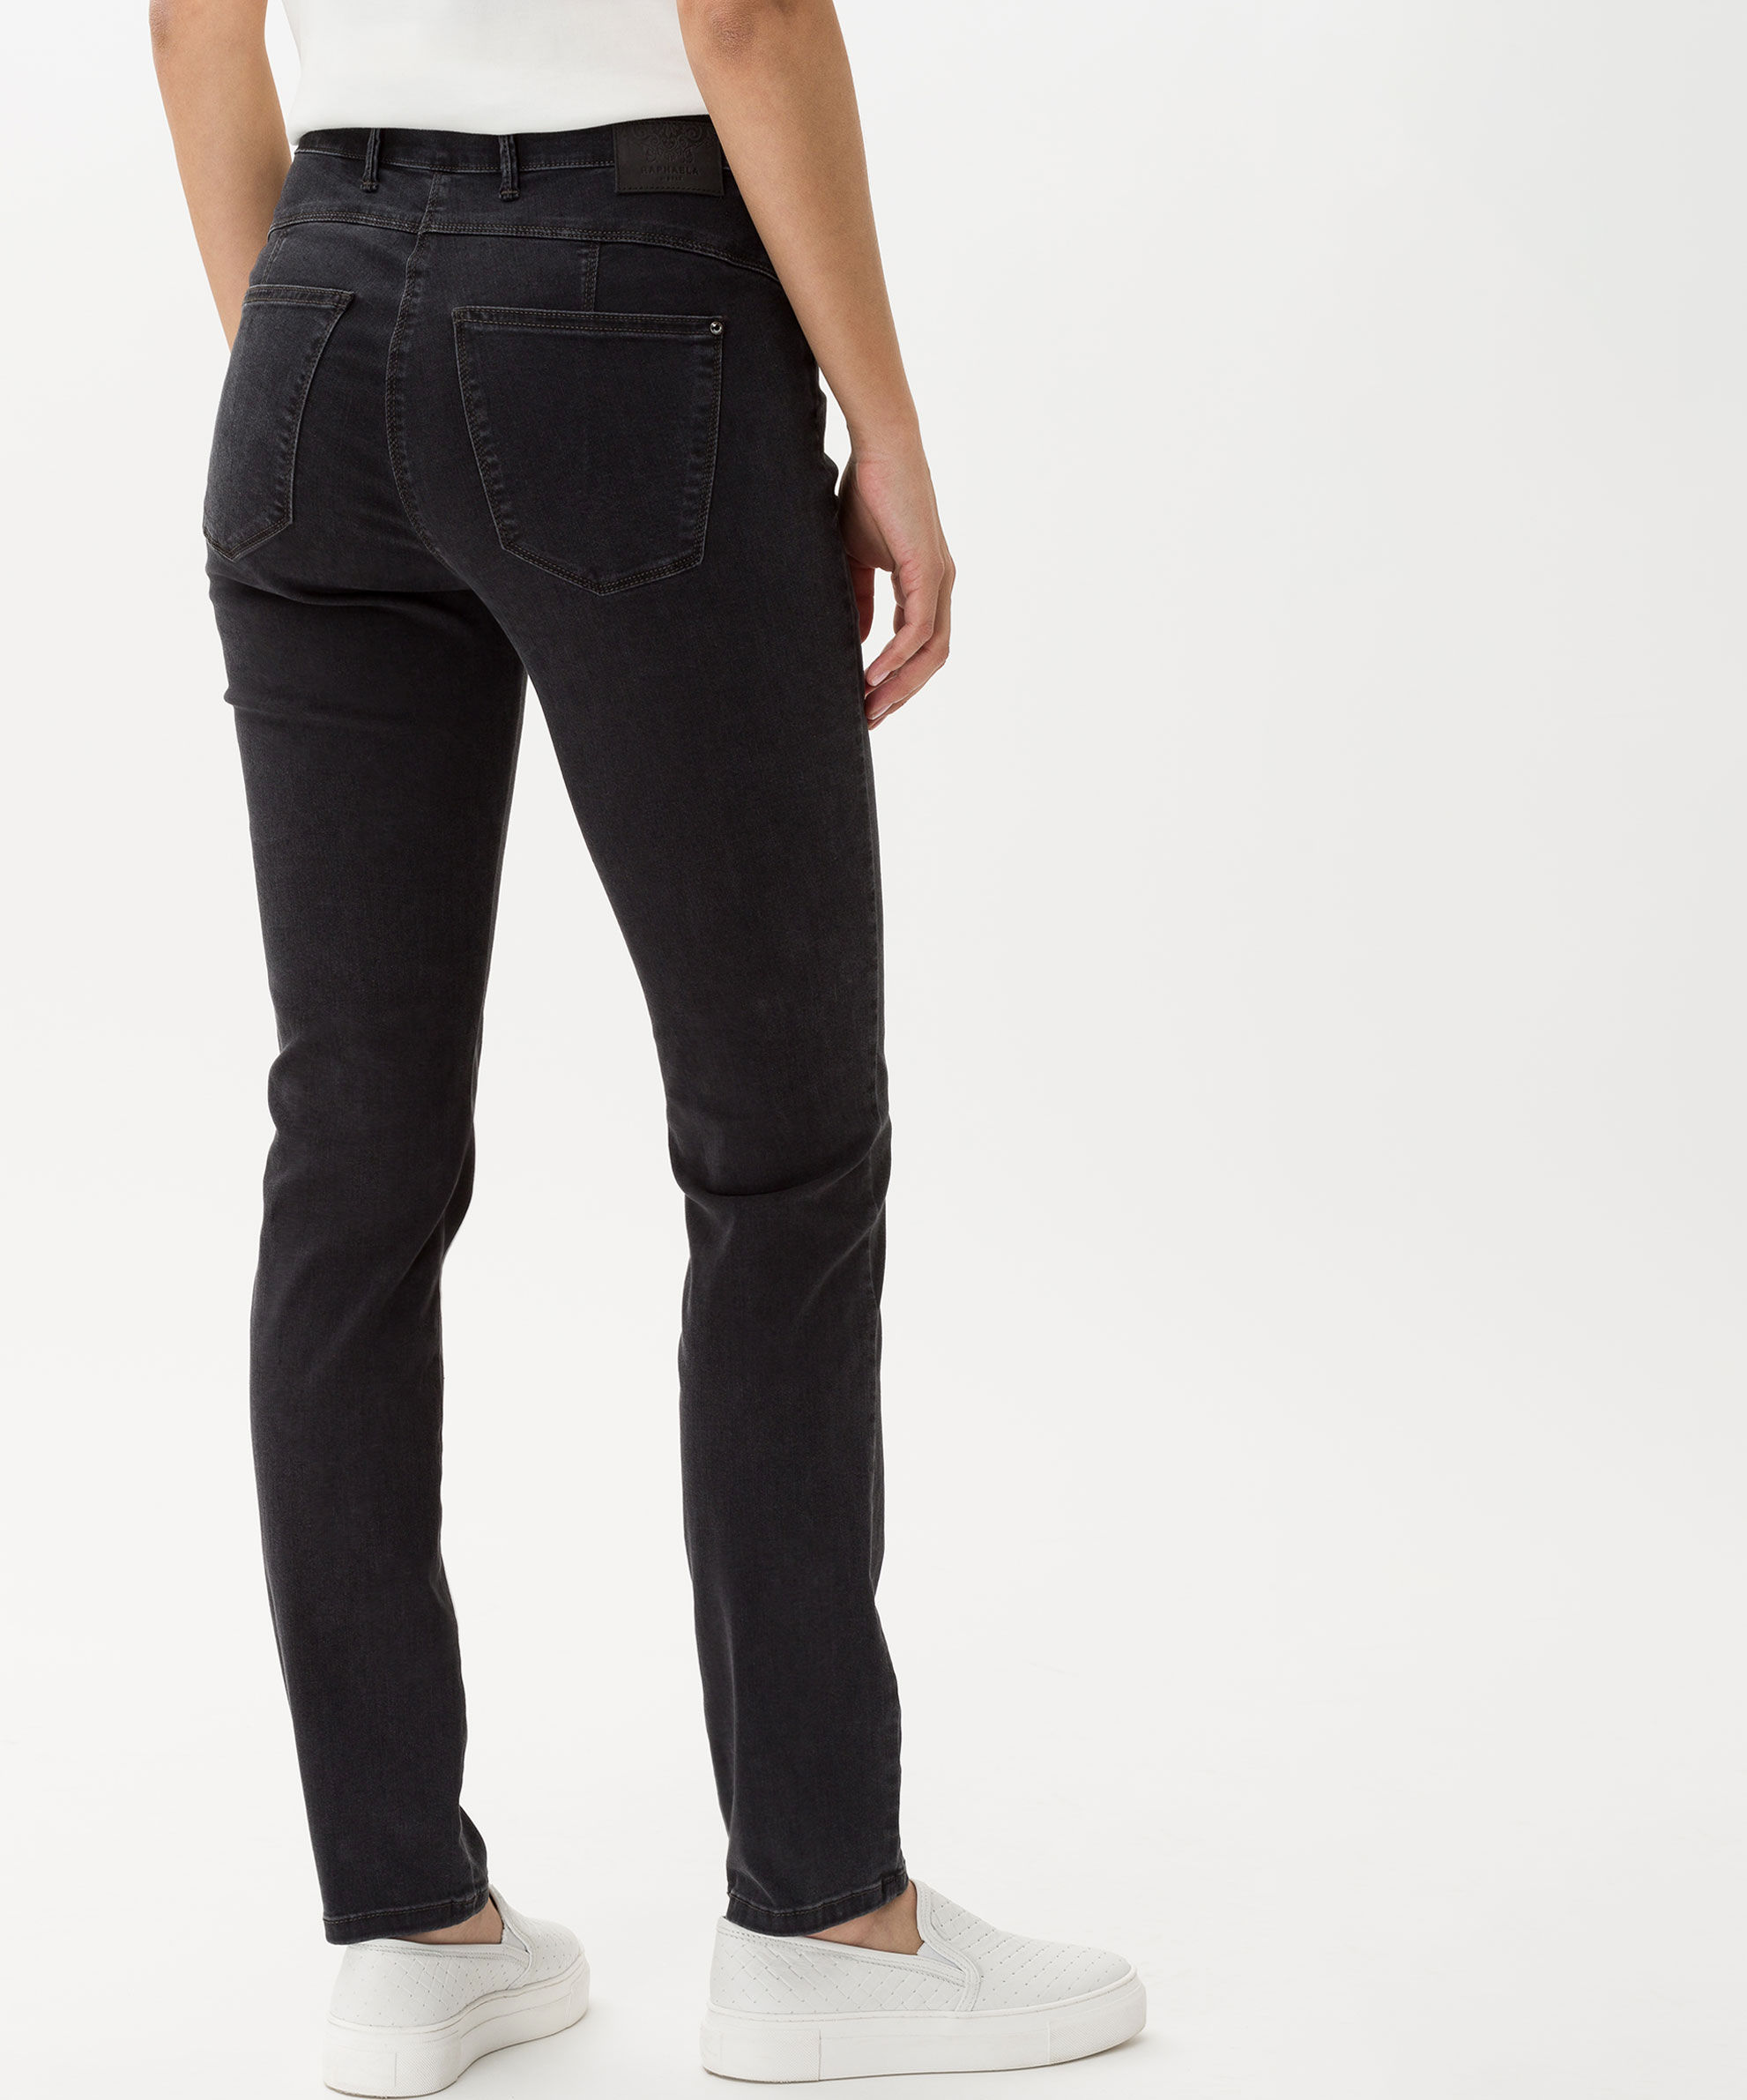 Jeans mit Komfortbund LUCA